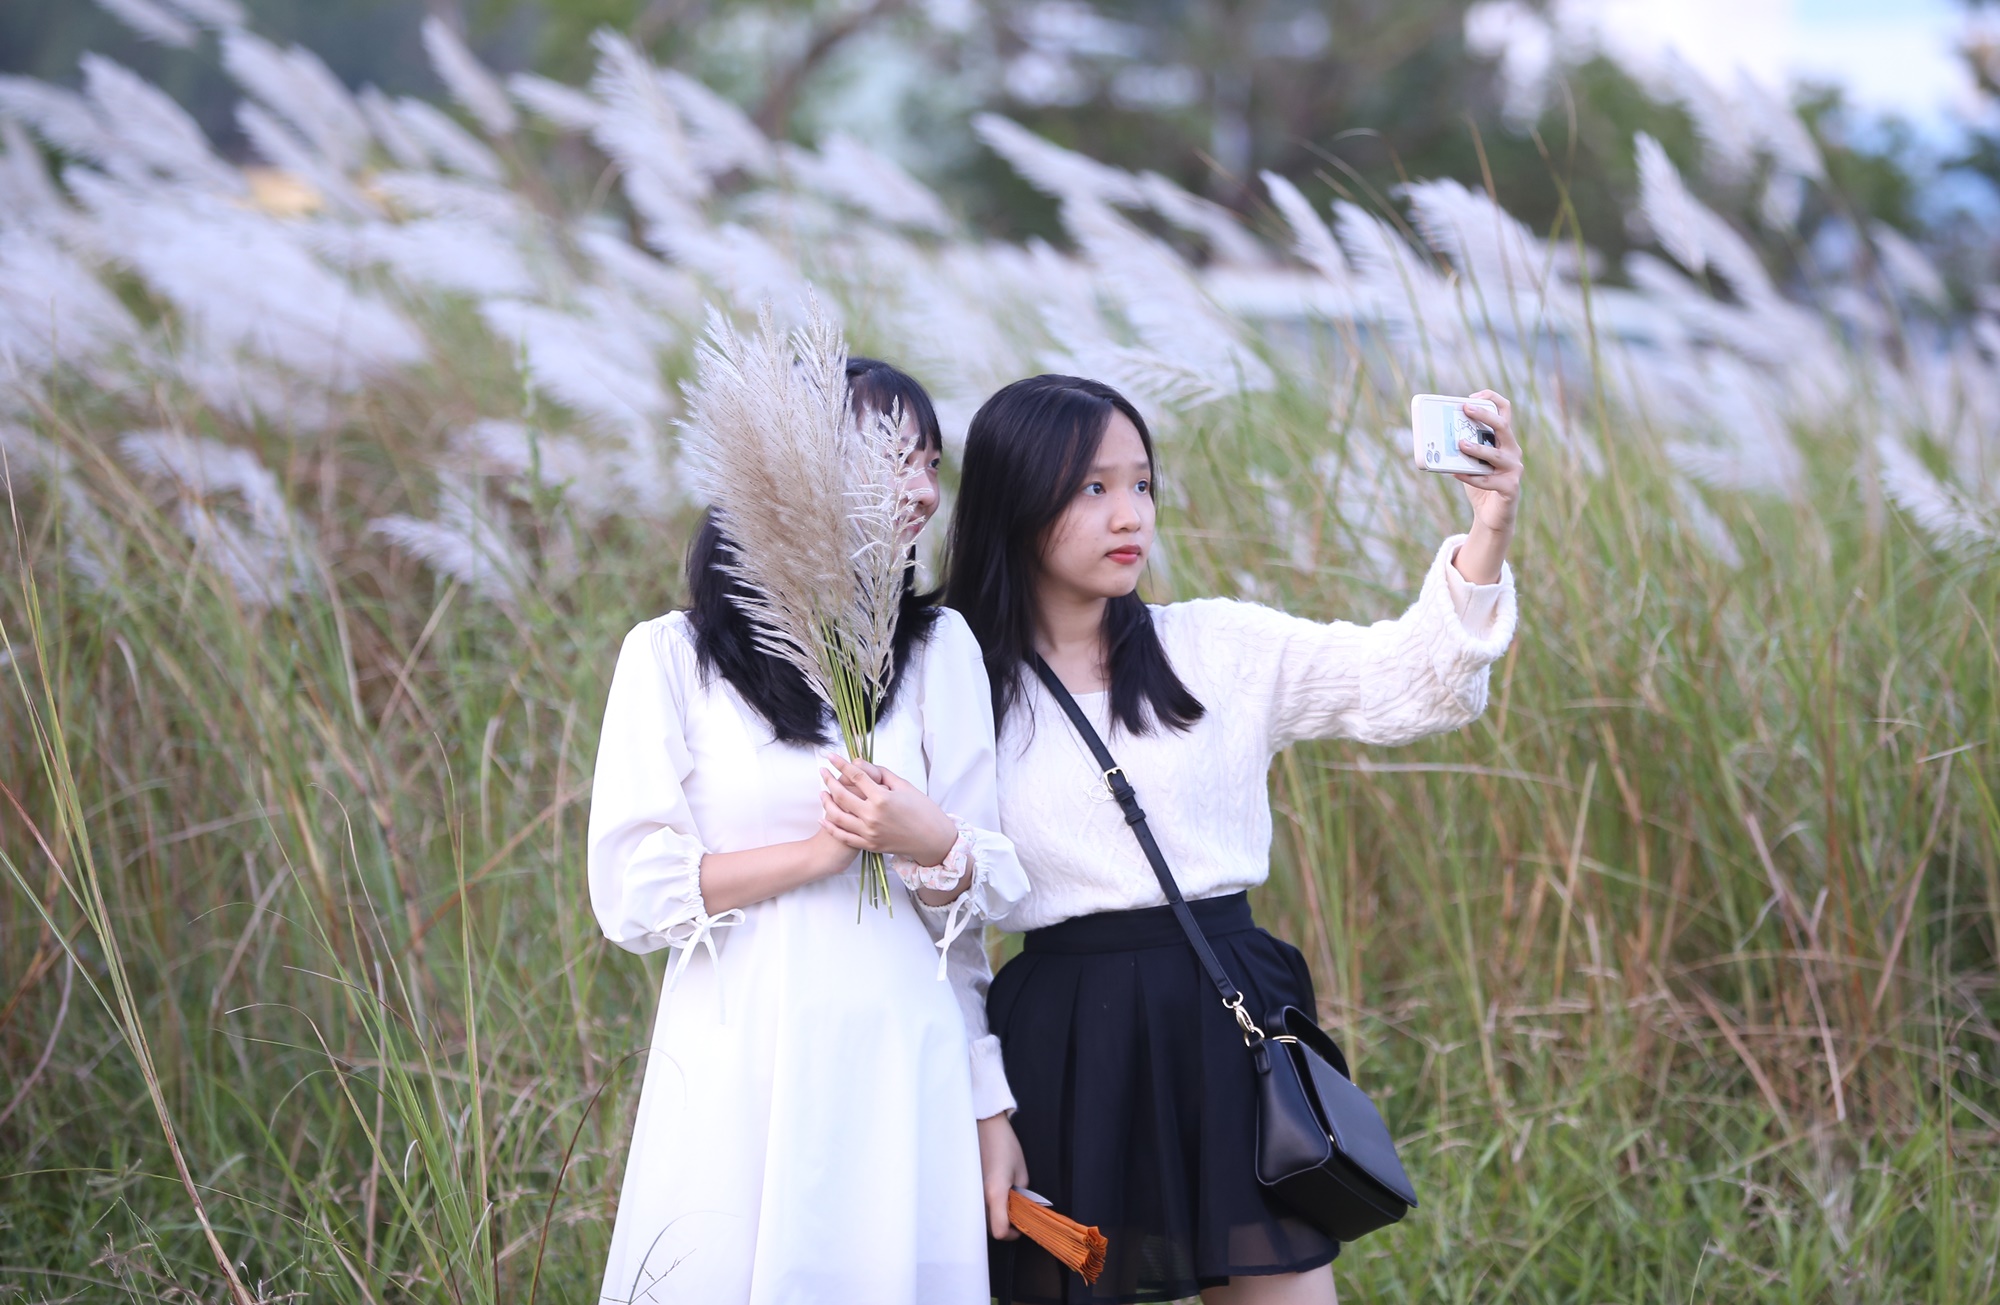 Người dân và du khách đổ xô check-in đồng cỏ lau trắng ở Đà Nẵng - Ảnh 5.